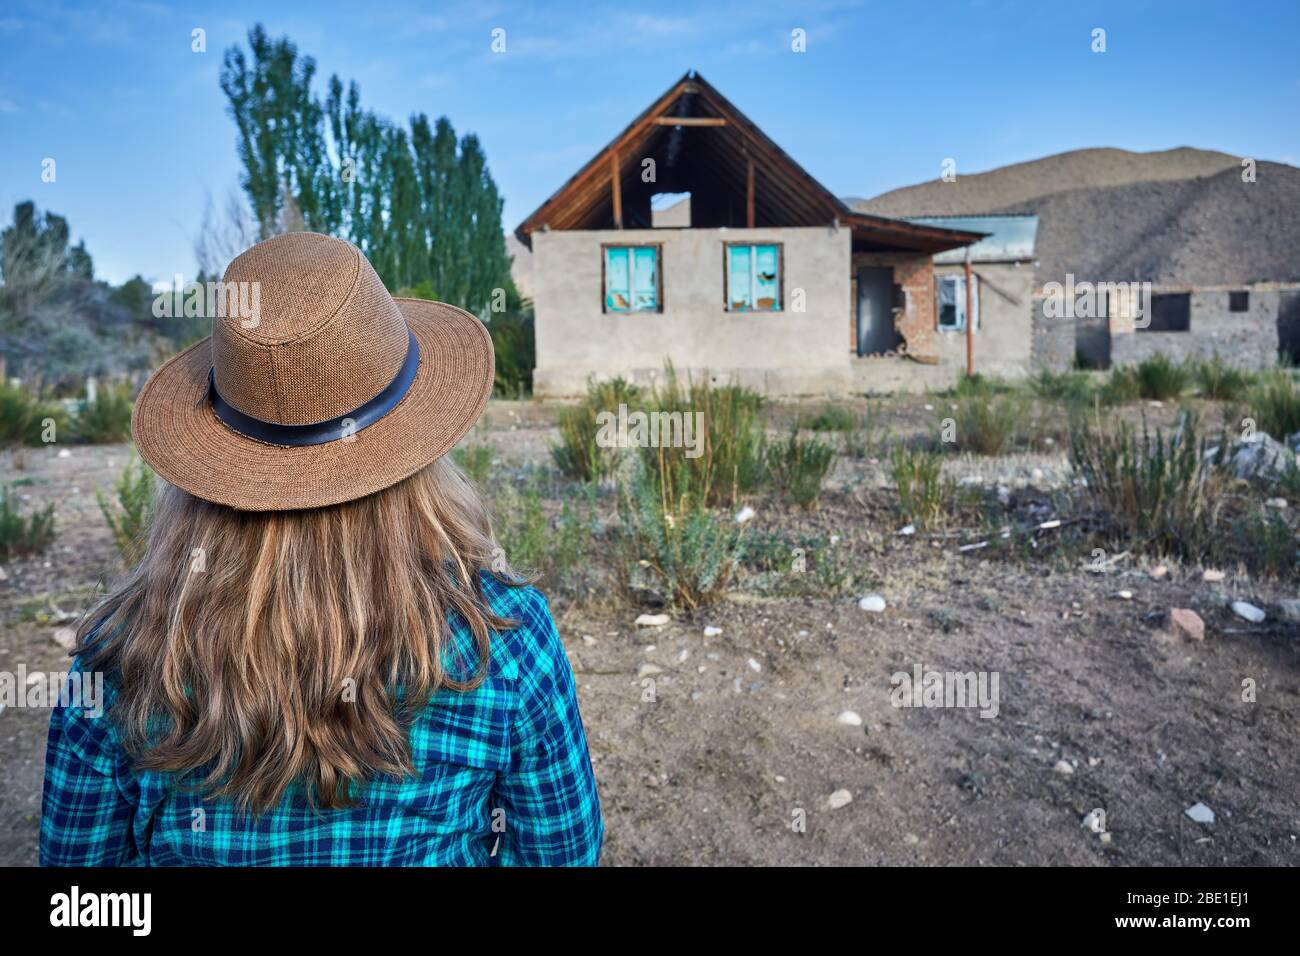 Femme au chapeau et à la chemise à carreaux à l'ancienne maison en ruine dans le village Banque D'Images